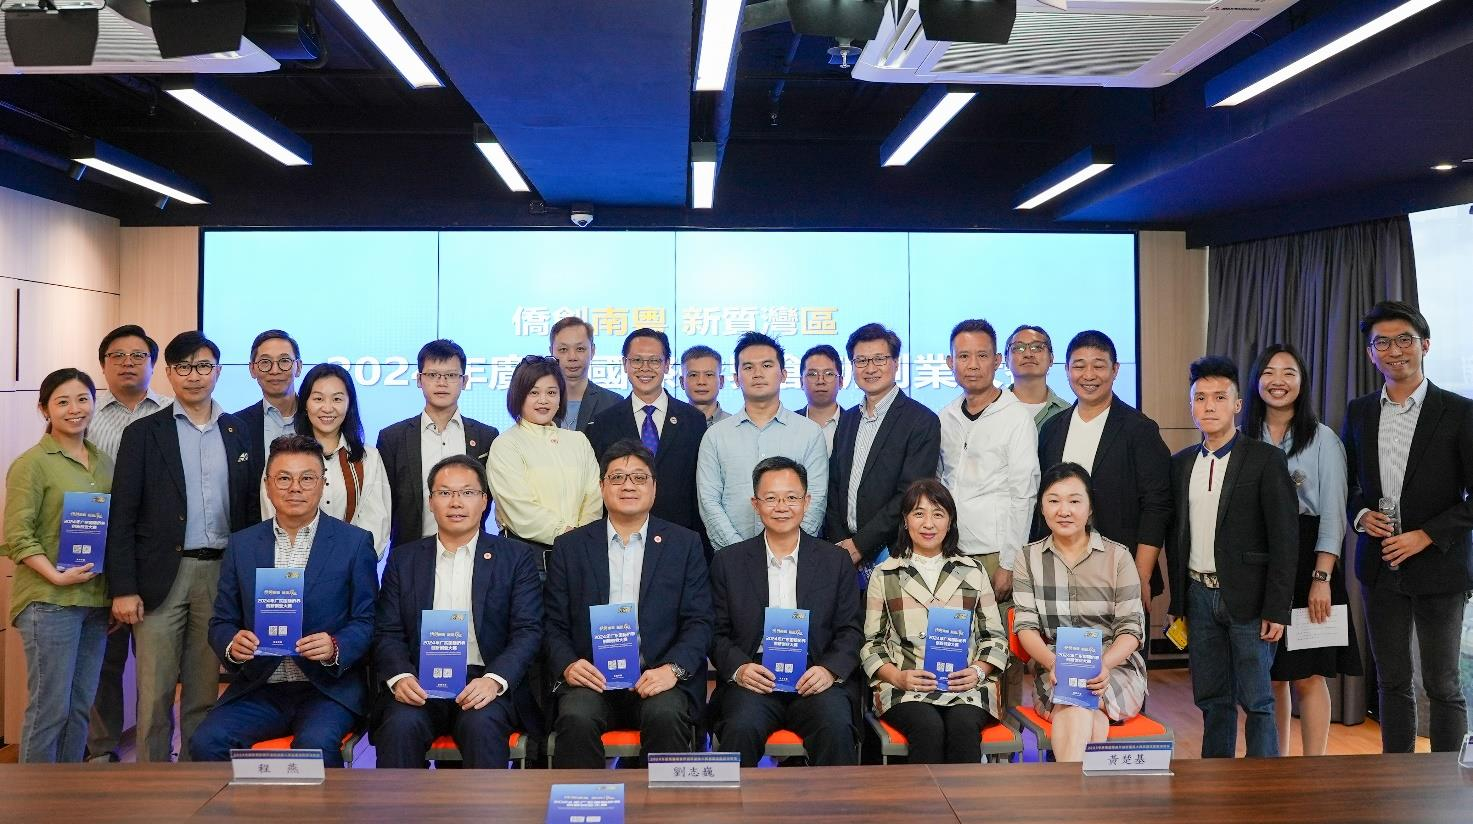 「廣東國際僑界創新創業大賽」在港僑聯會宣講